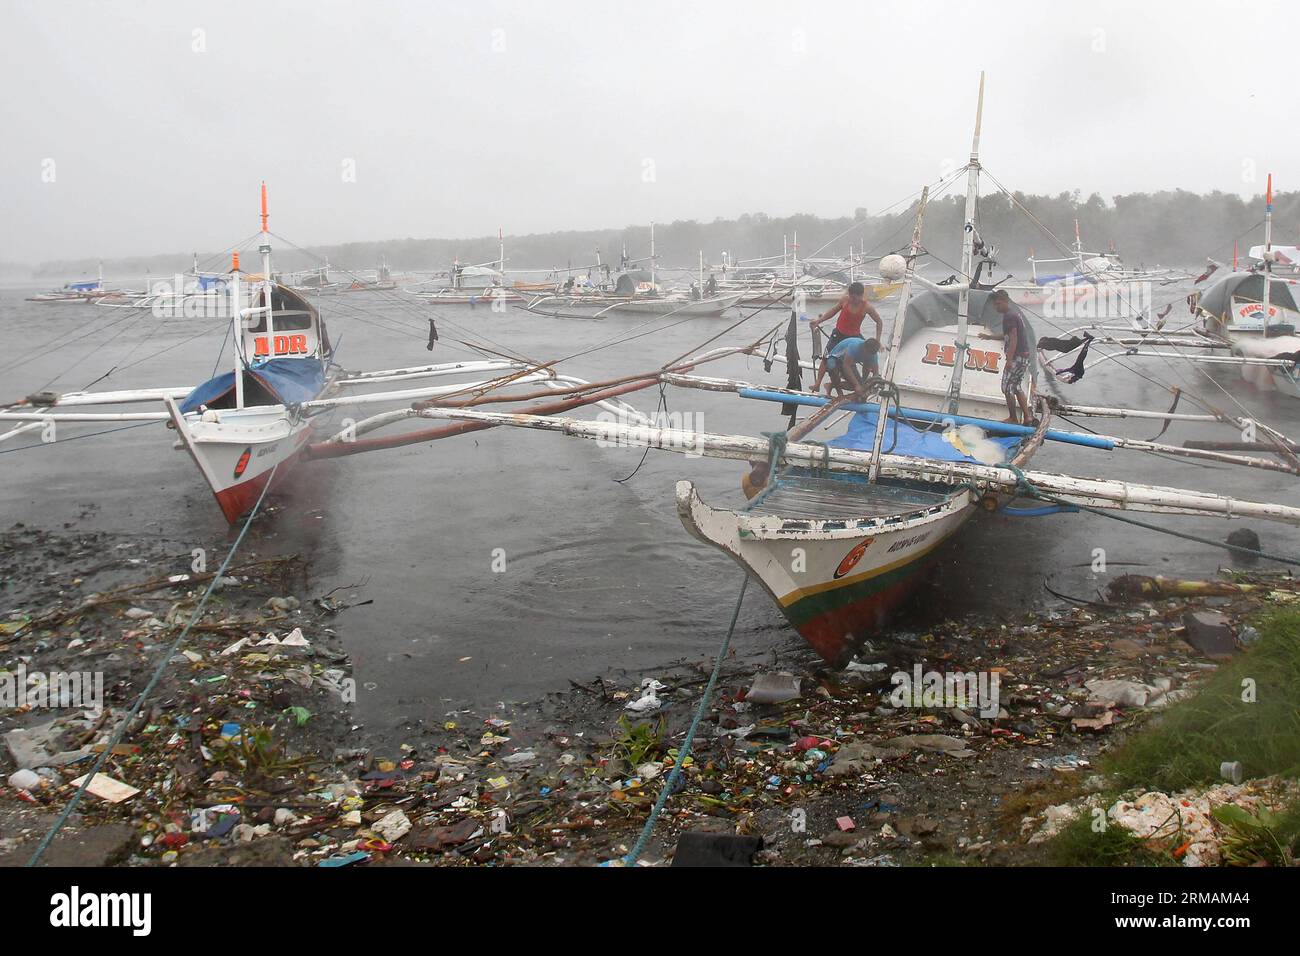 (140716) -- PROVINZ CAVITE, 16. Juli 2014 (Xinhua) -- Fischer versuchen, ihr Boot zu sichern, während sie den starken Winden des Taifuns Rammasun in der Provinz Cavite, Philippinen, am 16. Juli 2014 trotzen. Mindestens 5 Menschen wurden getötet, nachdem der Taifun Rammasun (lokaler Name: Glenda) am Mittwoch die philippinische Hauptstadt Metro Manila lahmlegte. (Xinhua/Rouelle Umali) PHILIPPINEN-CAVITE PROVINZ-TAIFUN RAMMASUN PUBLICATIONxNOTxINxCHN Provinz Cavite Juli 16 2014 XINHUA Fischer versuchen, ihr Boot zu sichern, während sie den starken Winden des Taifuns in der Provinz Cavite auf den PHILIPPINEN trotzen Stockfoto